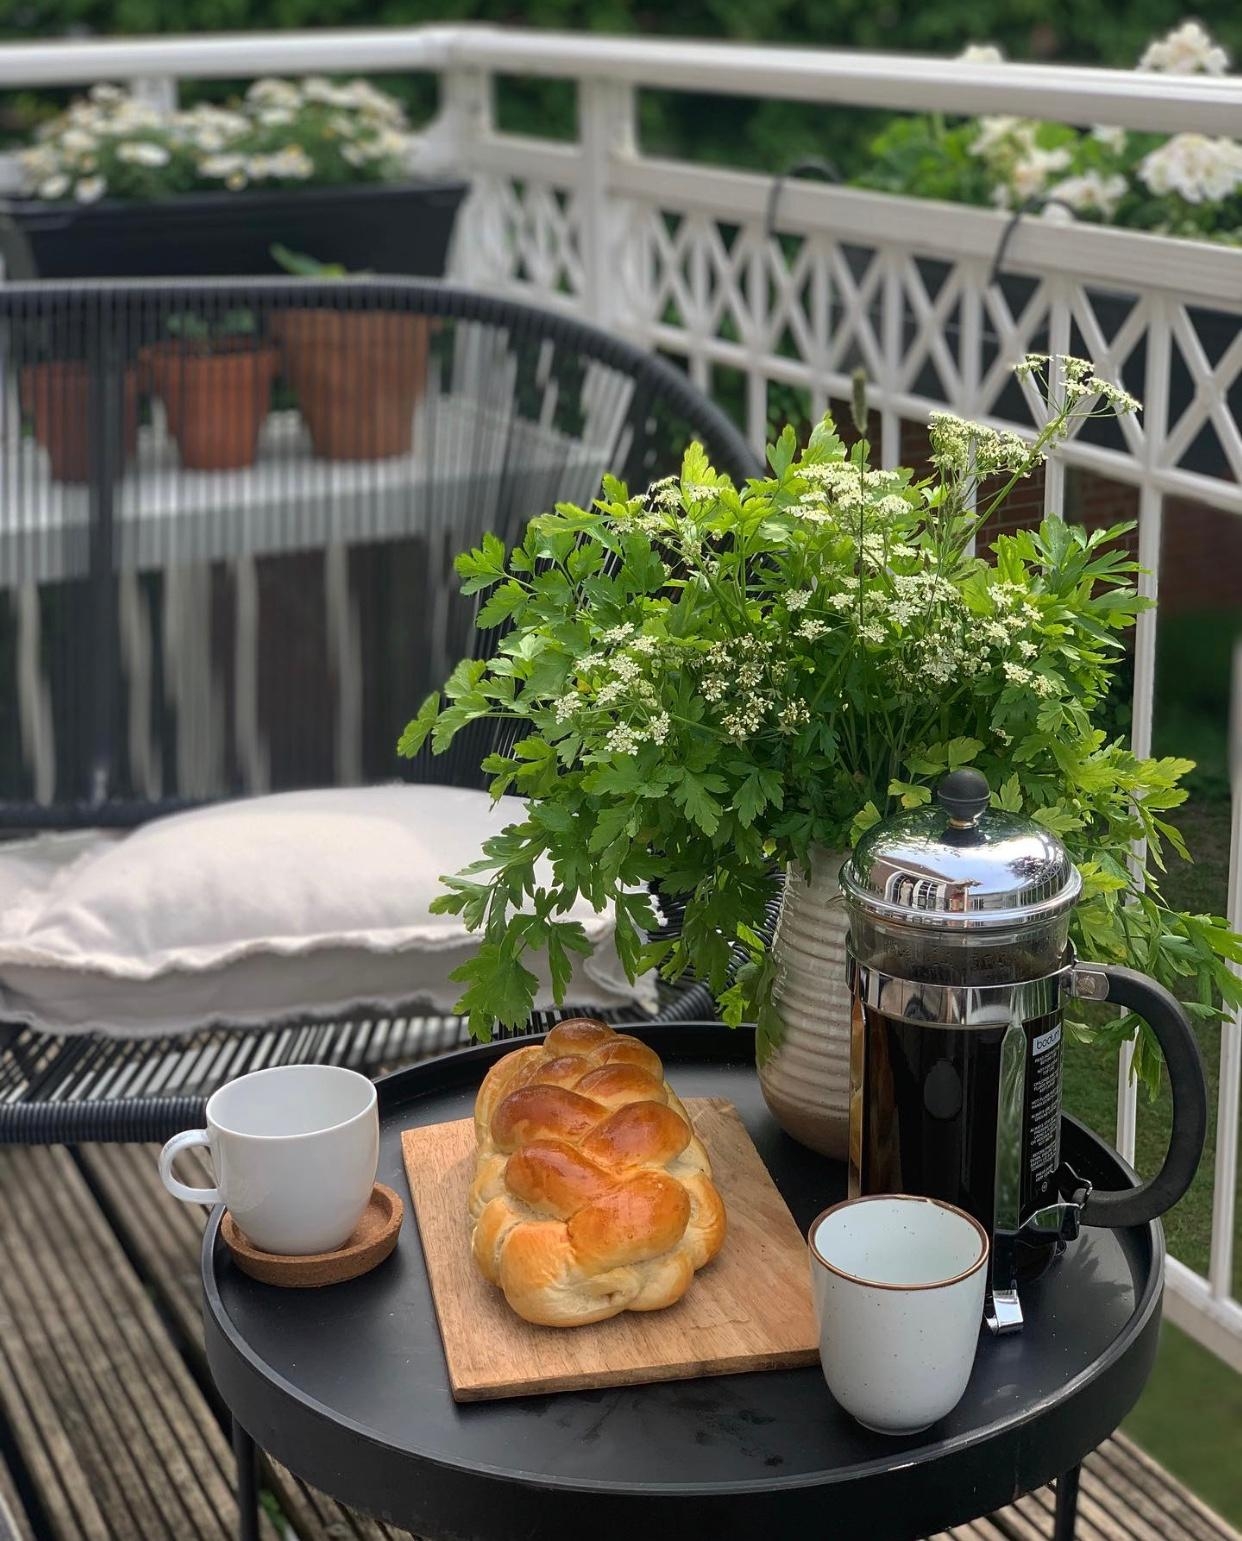 Kleine Kaffeerunde auf dem Balkon🌿
#balkon #frühlingsblumen #balkonien #freshflowerfriday #tischdeko #draußensein 